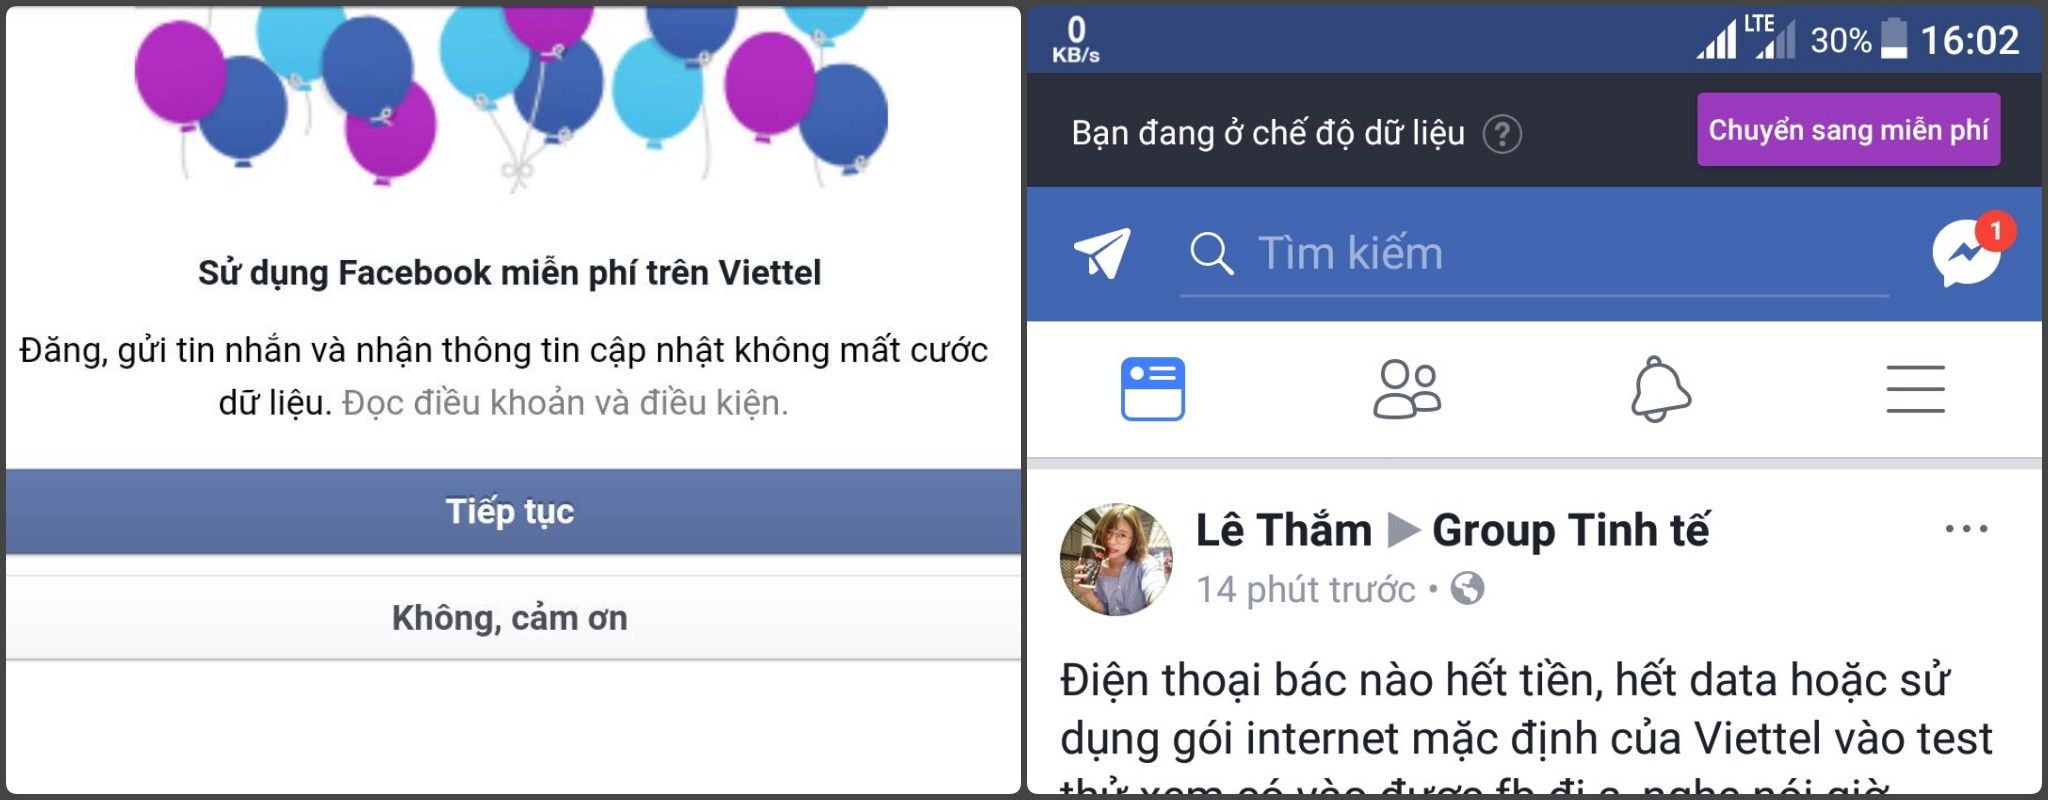 Anh em dùng Viettel có nhận được thông báo dùng Facebook miễn phí không?